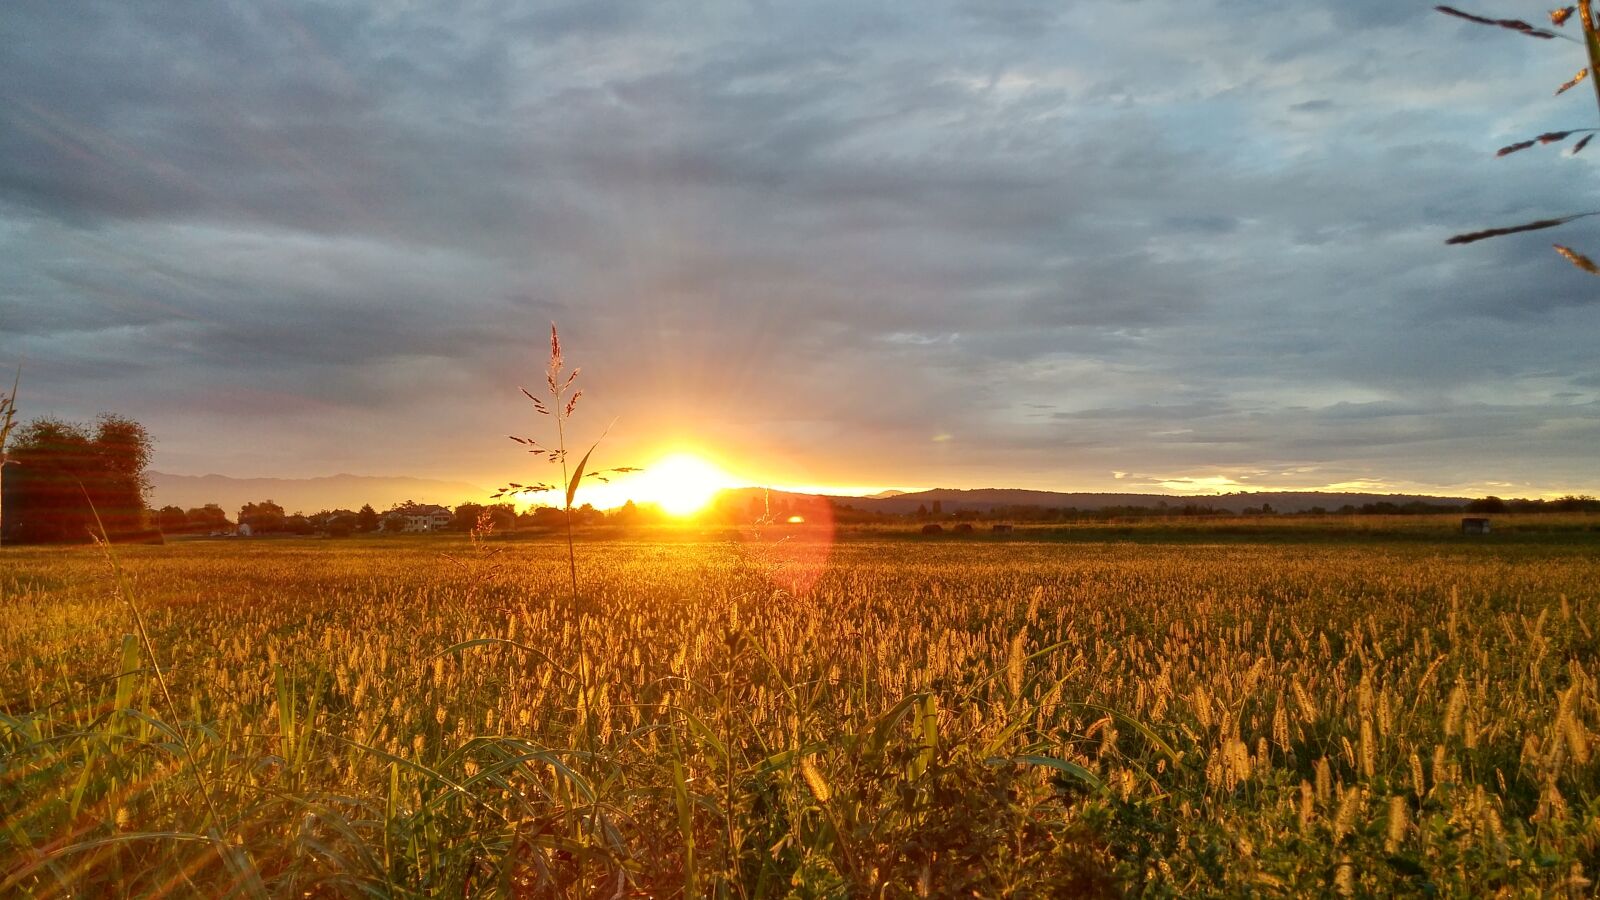 LG G FLEX2 sample photo. Dawn, sun, landscape photography